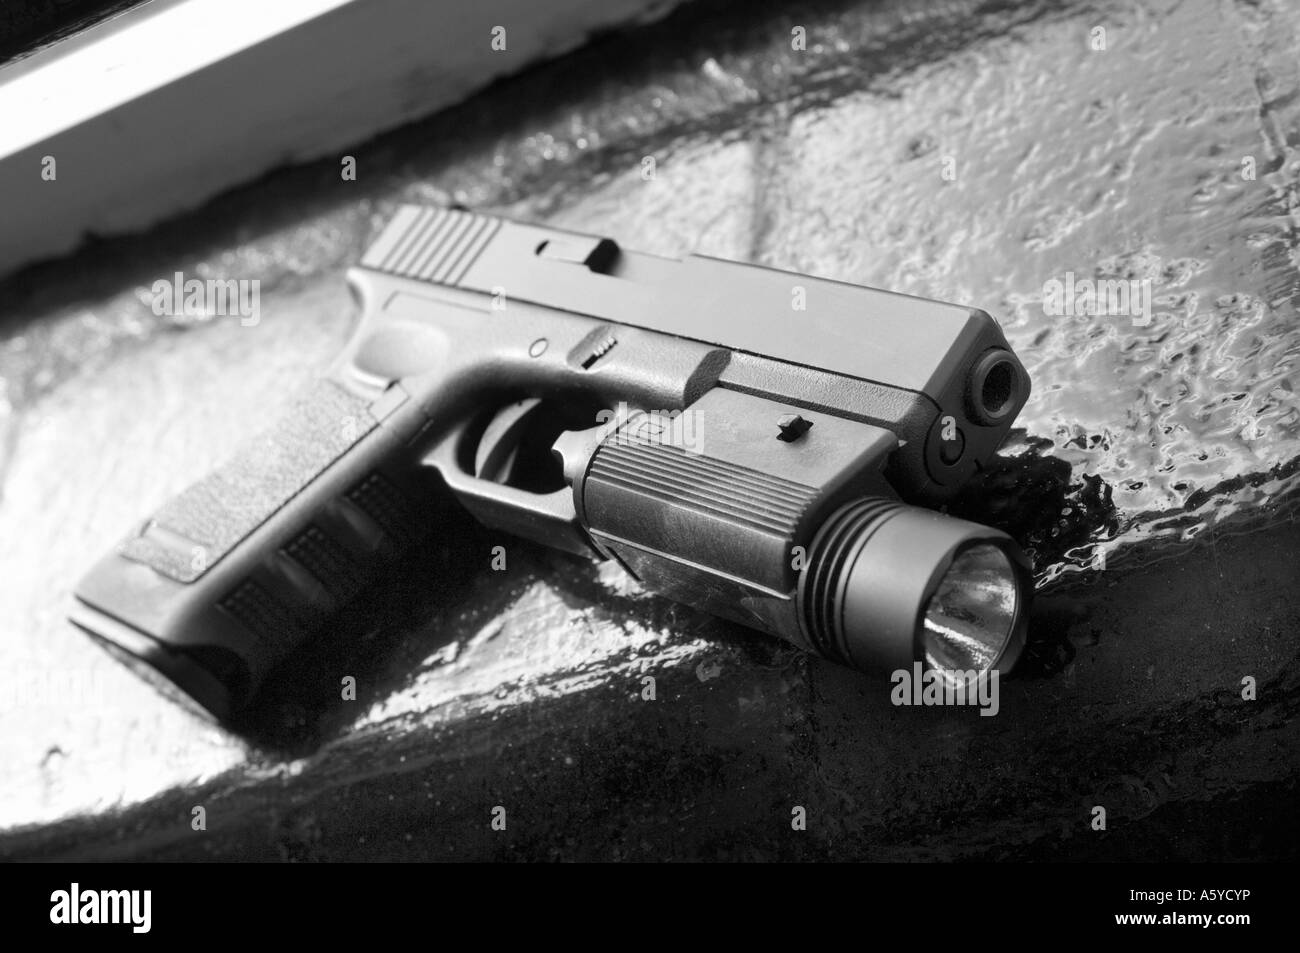 eine Glock automatische Pistole liegen auf der Fensterbank (Replikat Pistole) Stockfoto